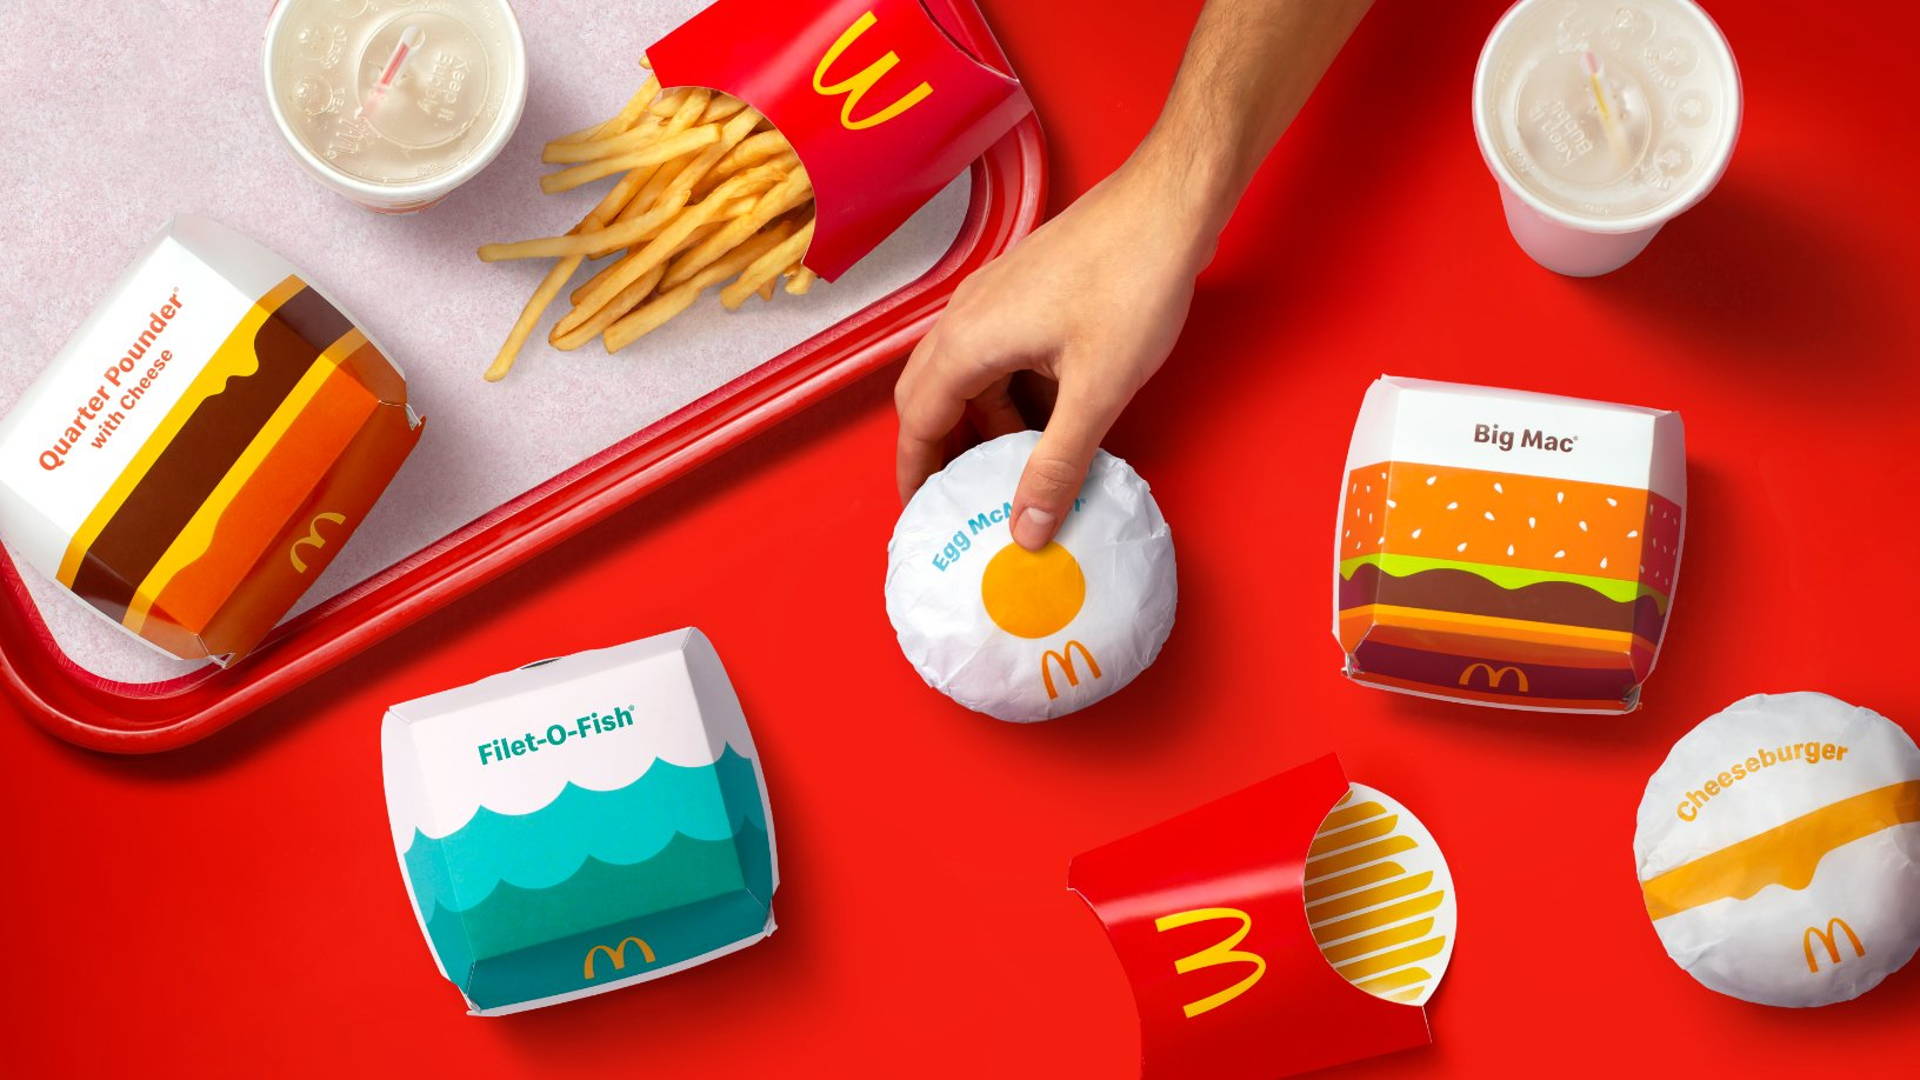 Herontwerp verpakking McDonald's: grote rol vouwkarton